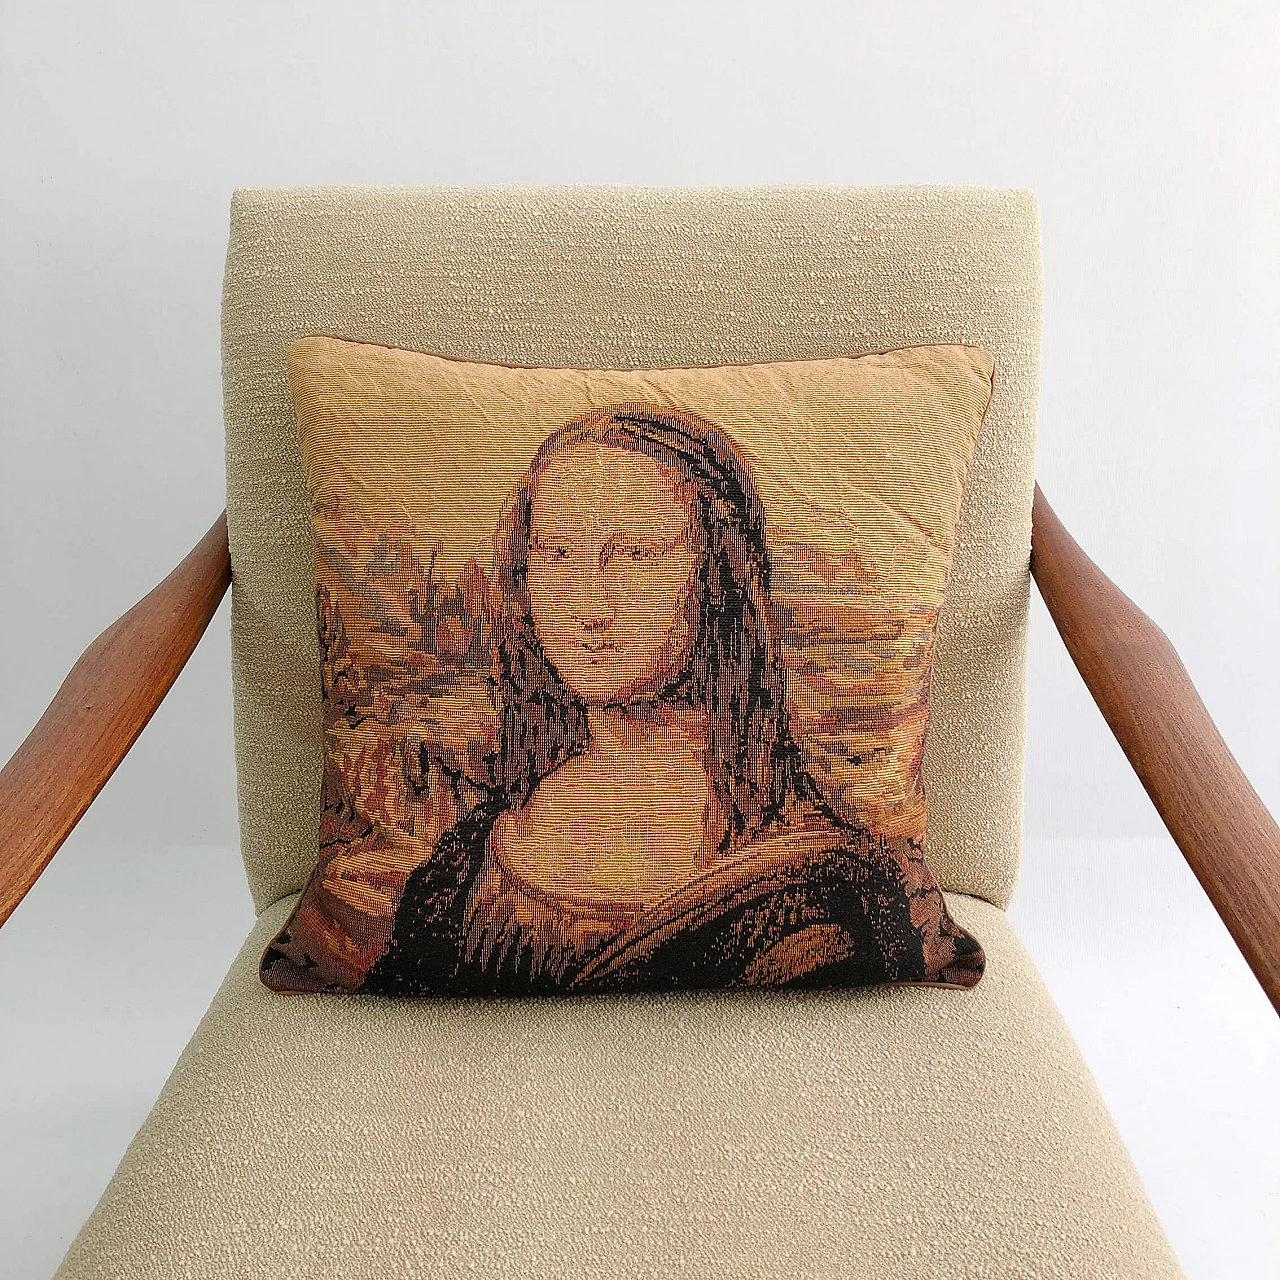 Mona Lisa souvenir cushion, 1970s 1323845